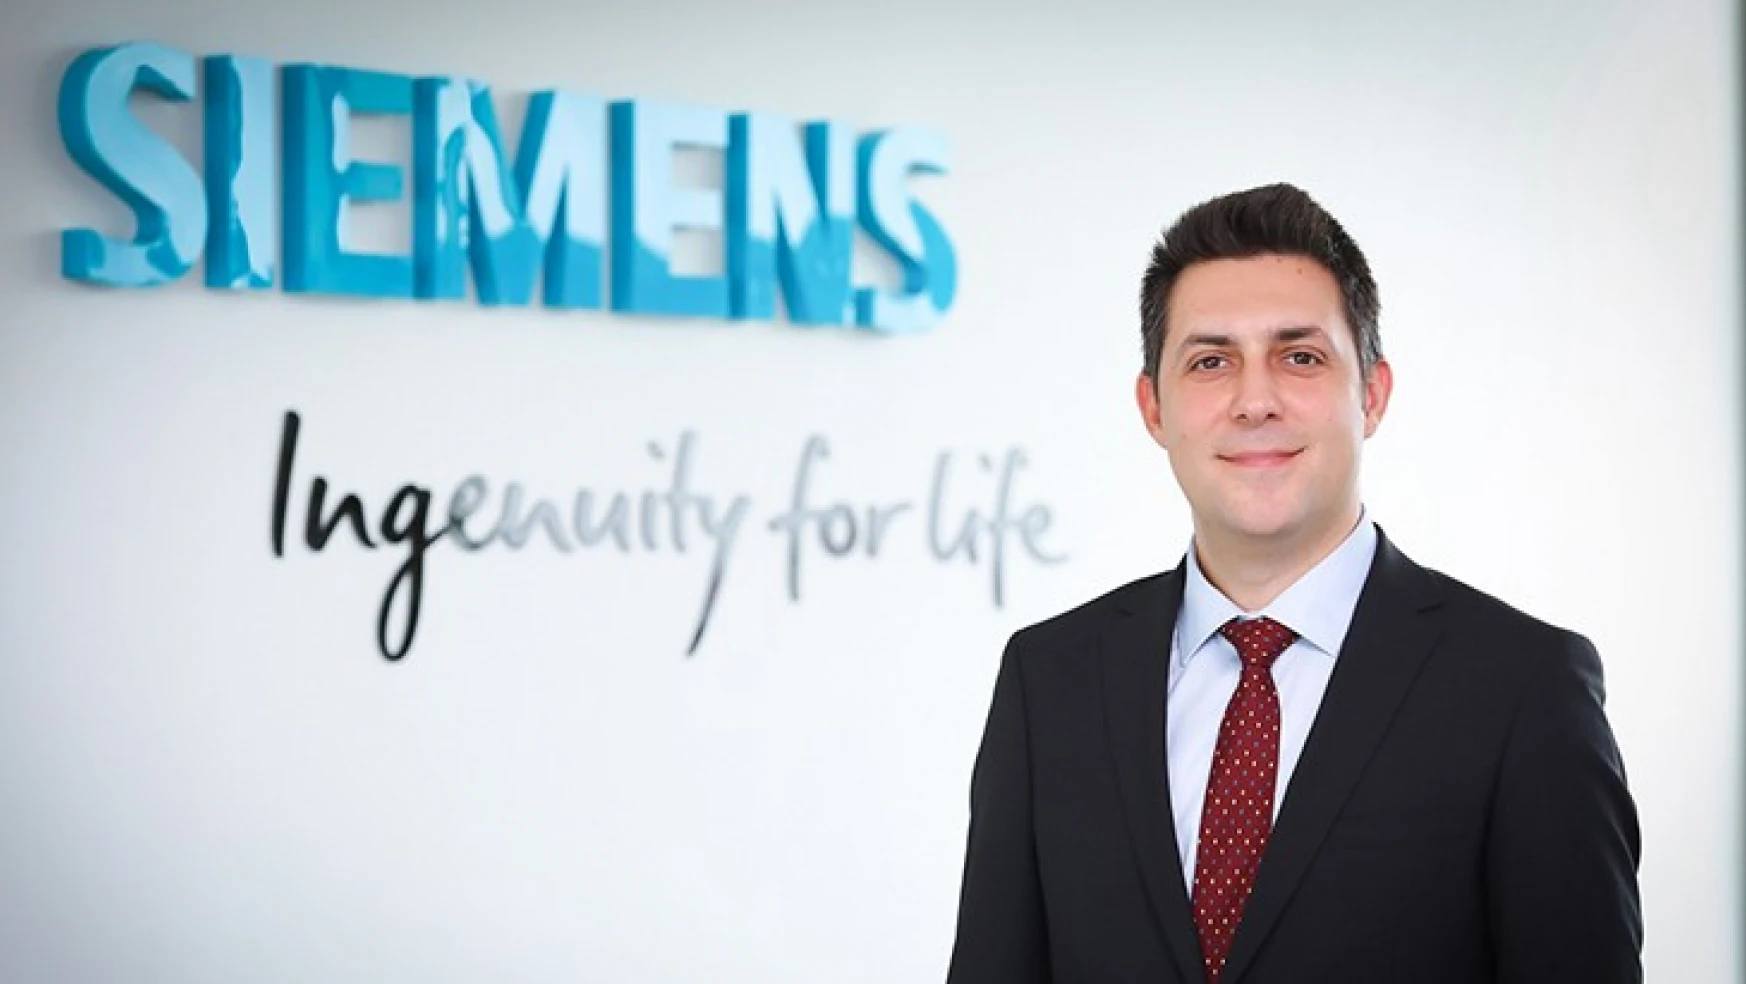 Siemens Türkiye'de yeni atama